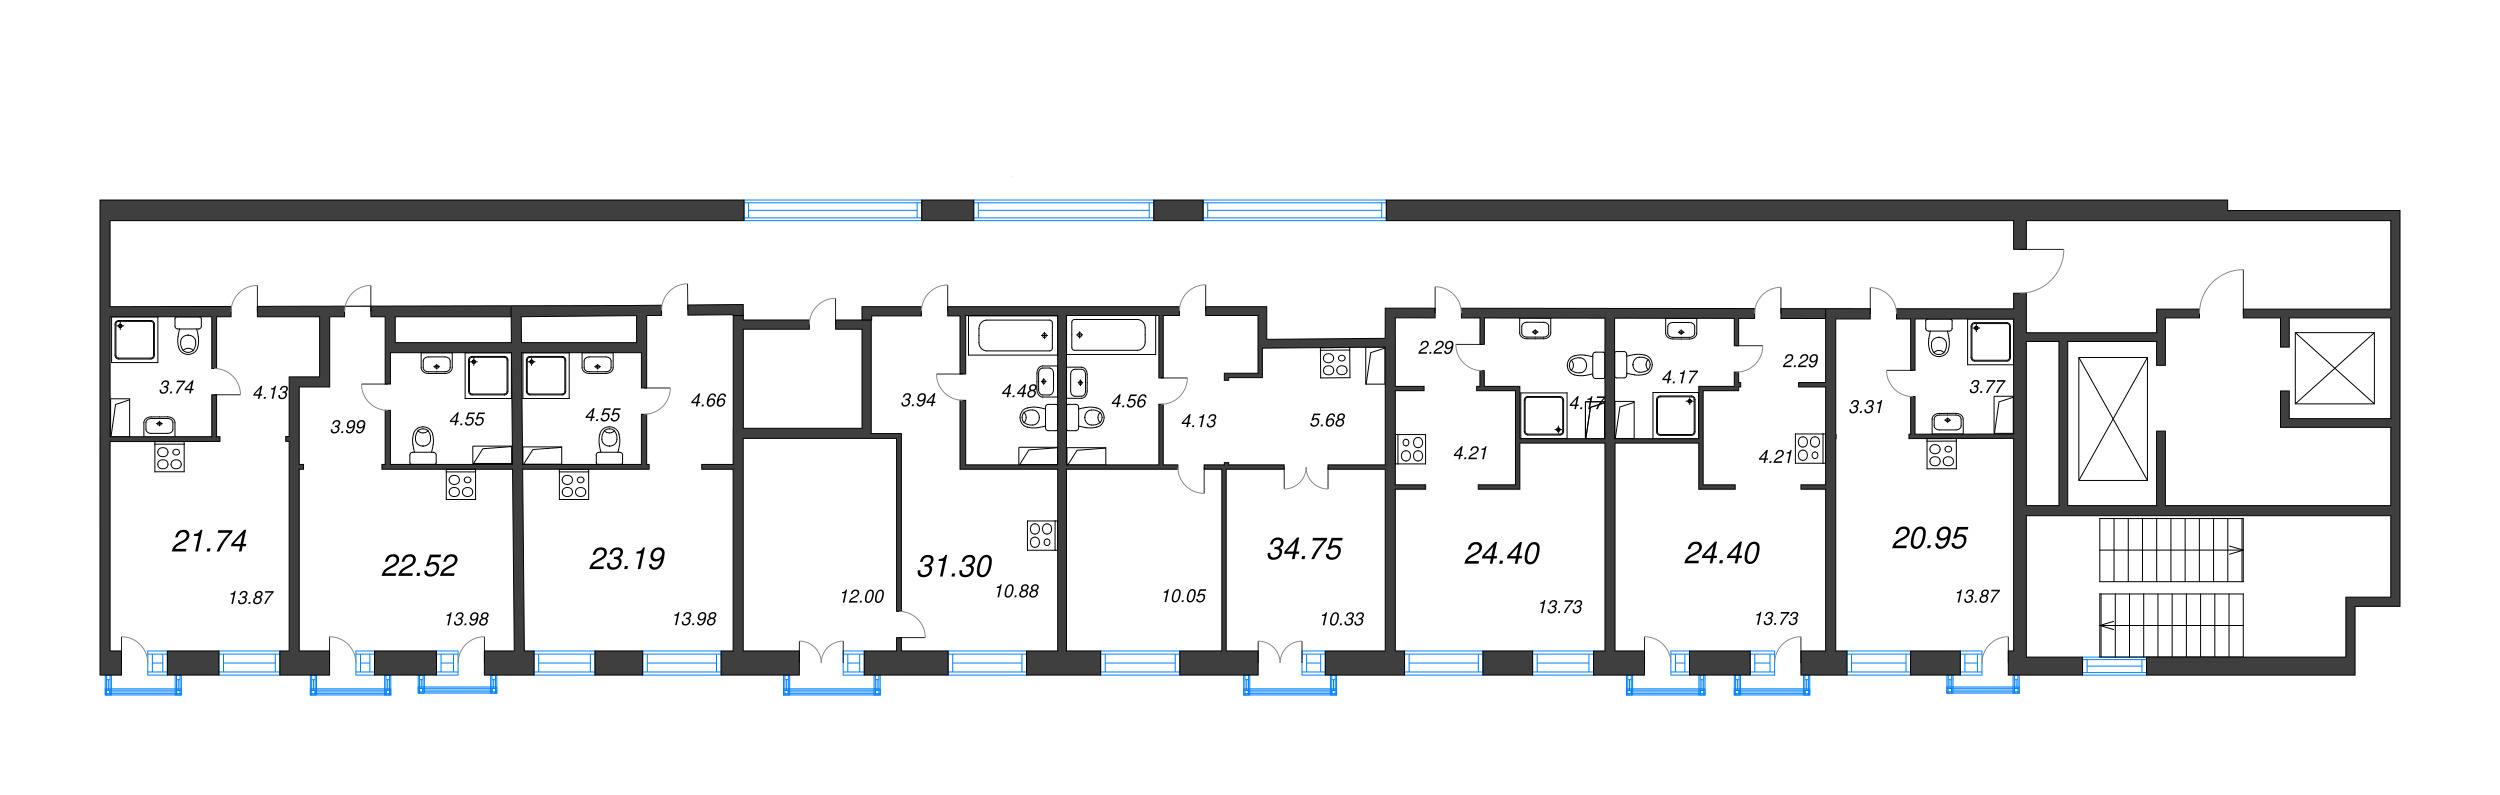 Квартира-студия, 20.95 м² в ЖК "ID Polytech" - планировка этажа